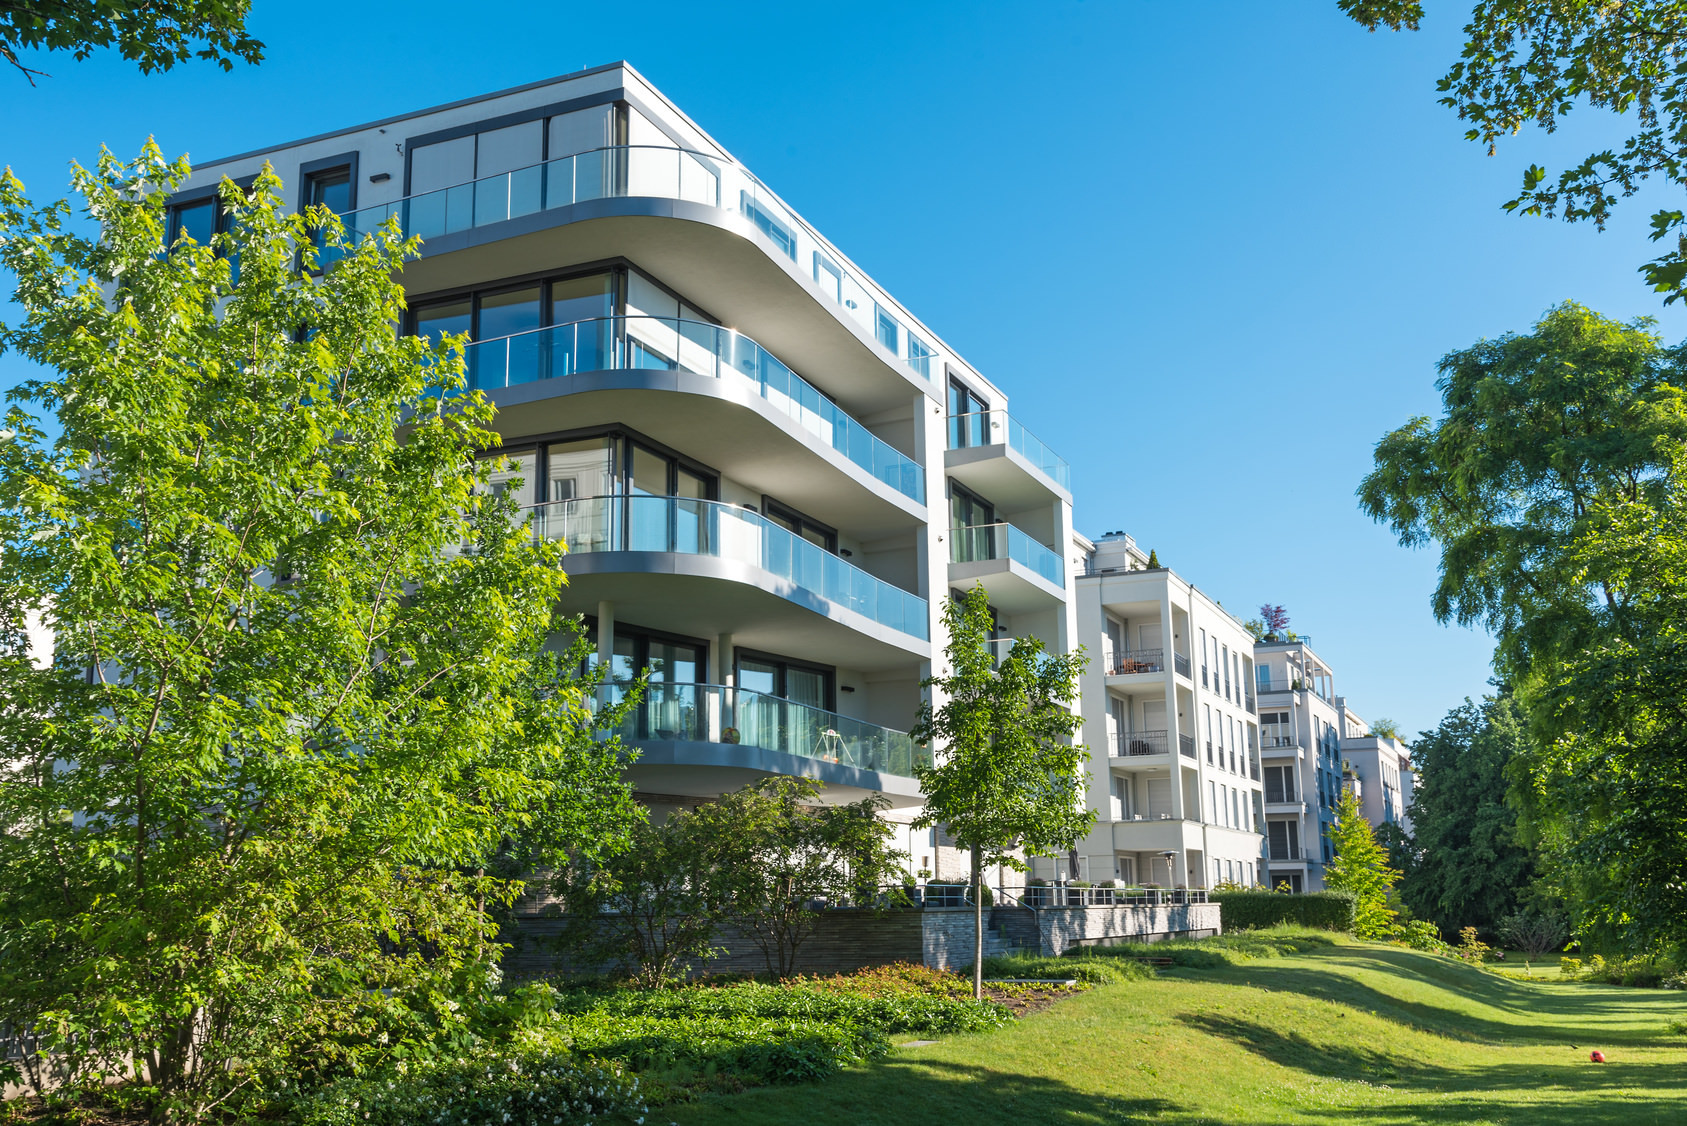 Off Market Immobilien Deal: REBA IMMOBILIEN AG vermittelt Baugrundstück für Geschosswohnungsbau in Leipzig